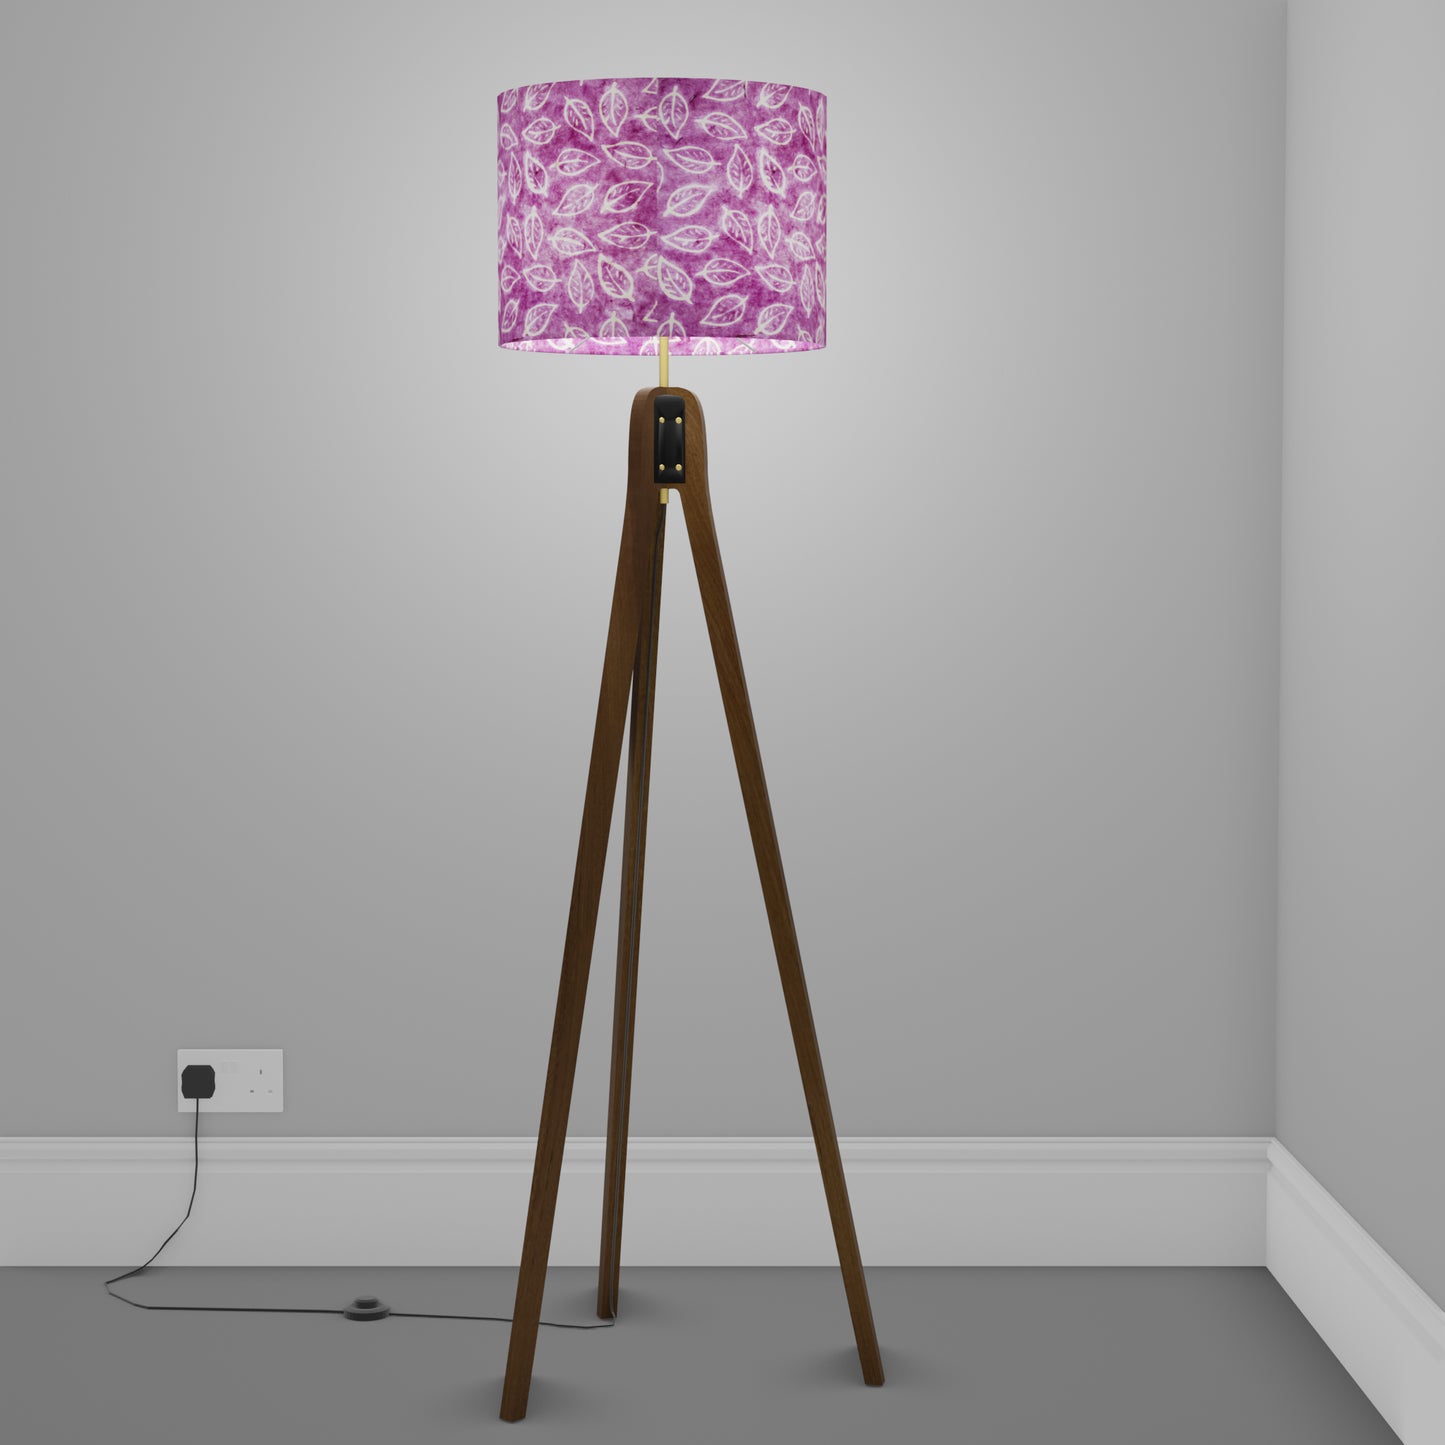 Sapele Tripod Floor Lamp - P68 - Batik Leaf on Purple